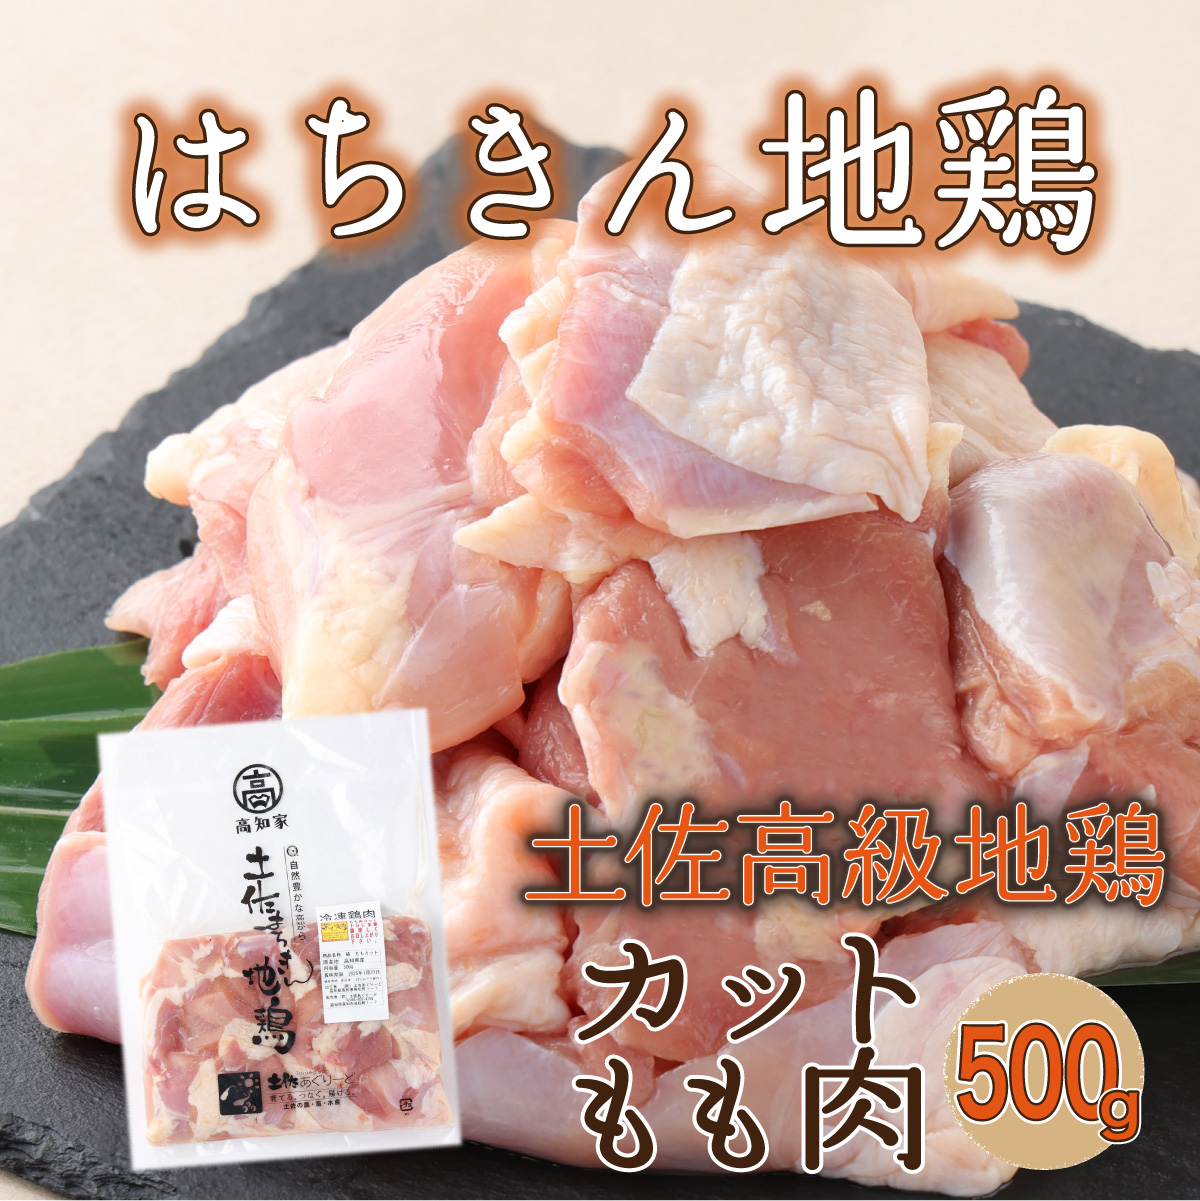 [2〜3人前]はちきん地鶏のモモ肉 500gカット 鶏肉 小分け 冷凍 鶏もも肉 6000円